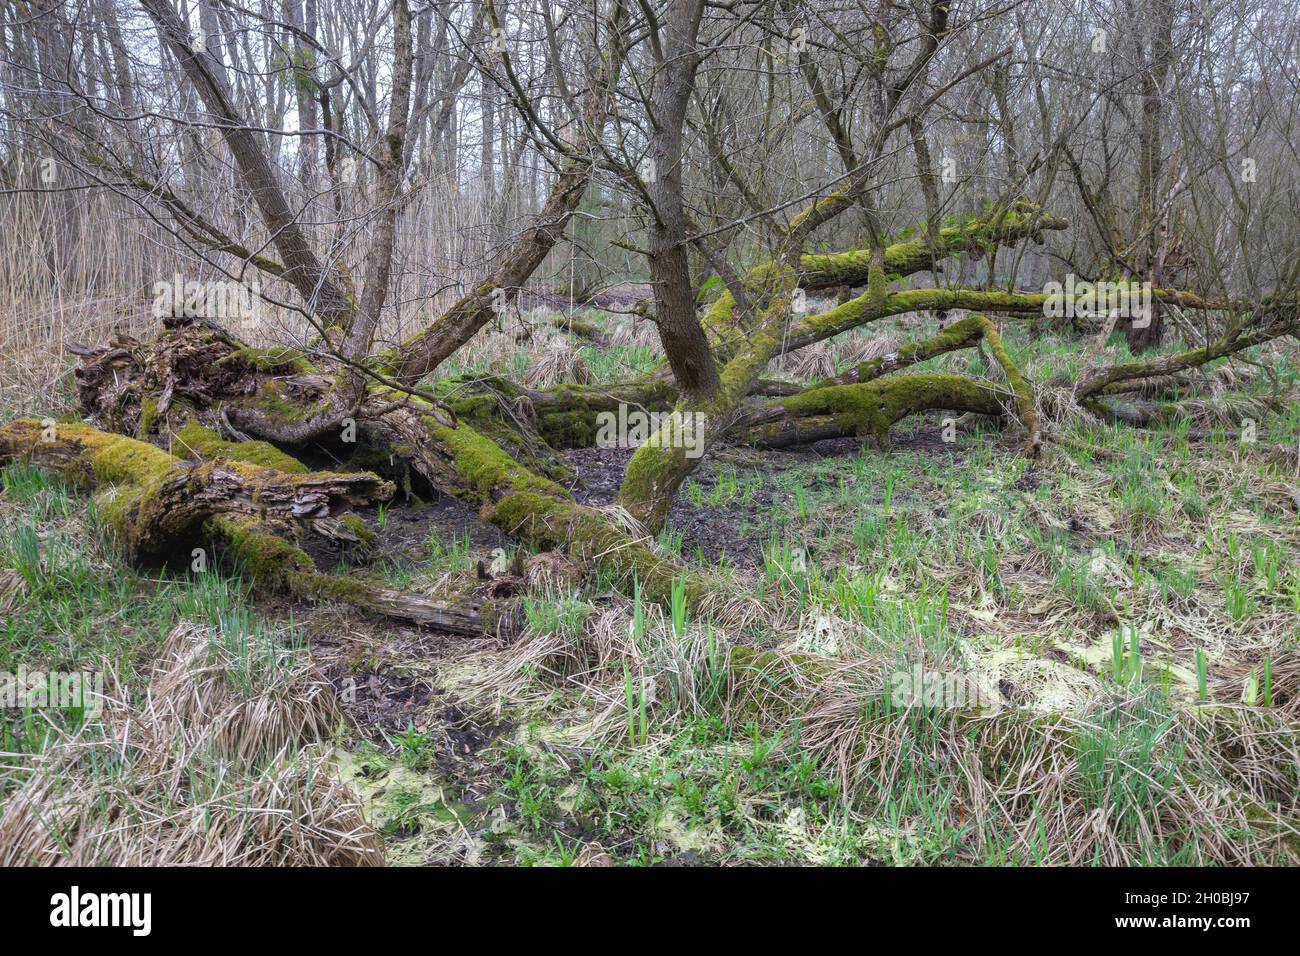 Saules du Mothern, ancienne forêt de saules, Trogne ou arbres refuge pour  de nombreux animaux, Bas Rhin, région du Grand est, France Photo Stock -  Alamy